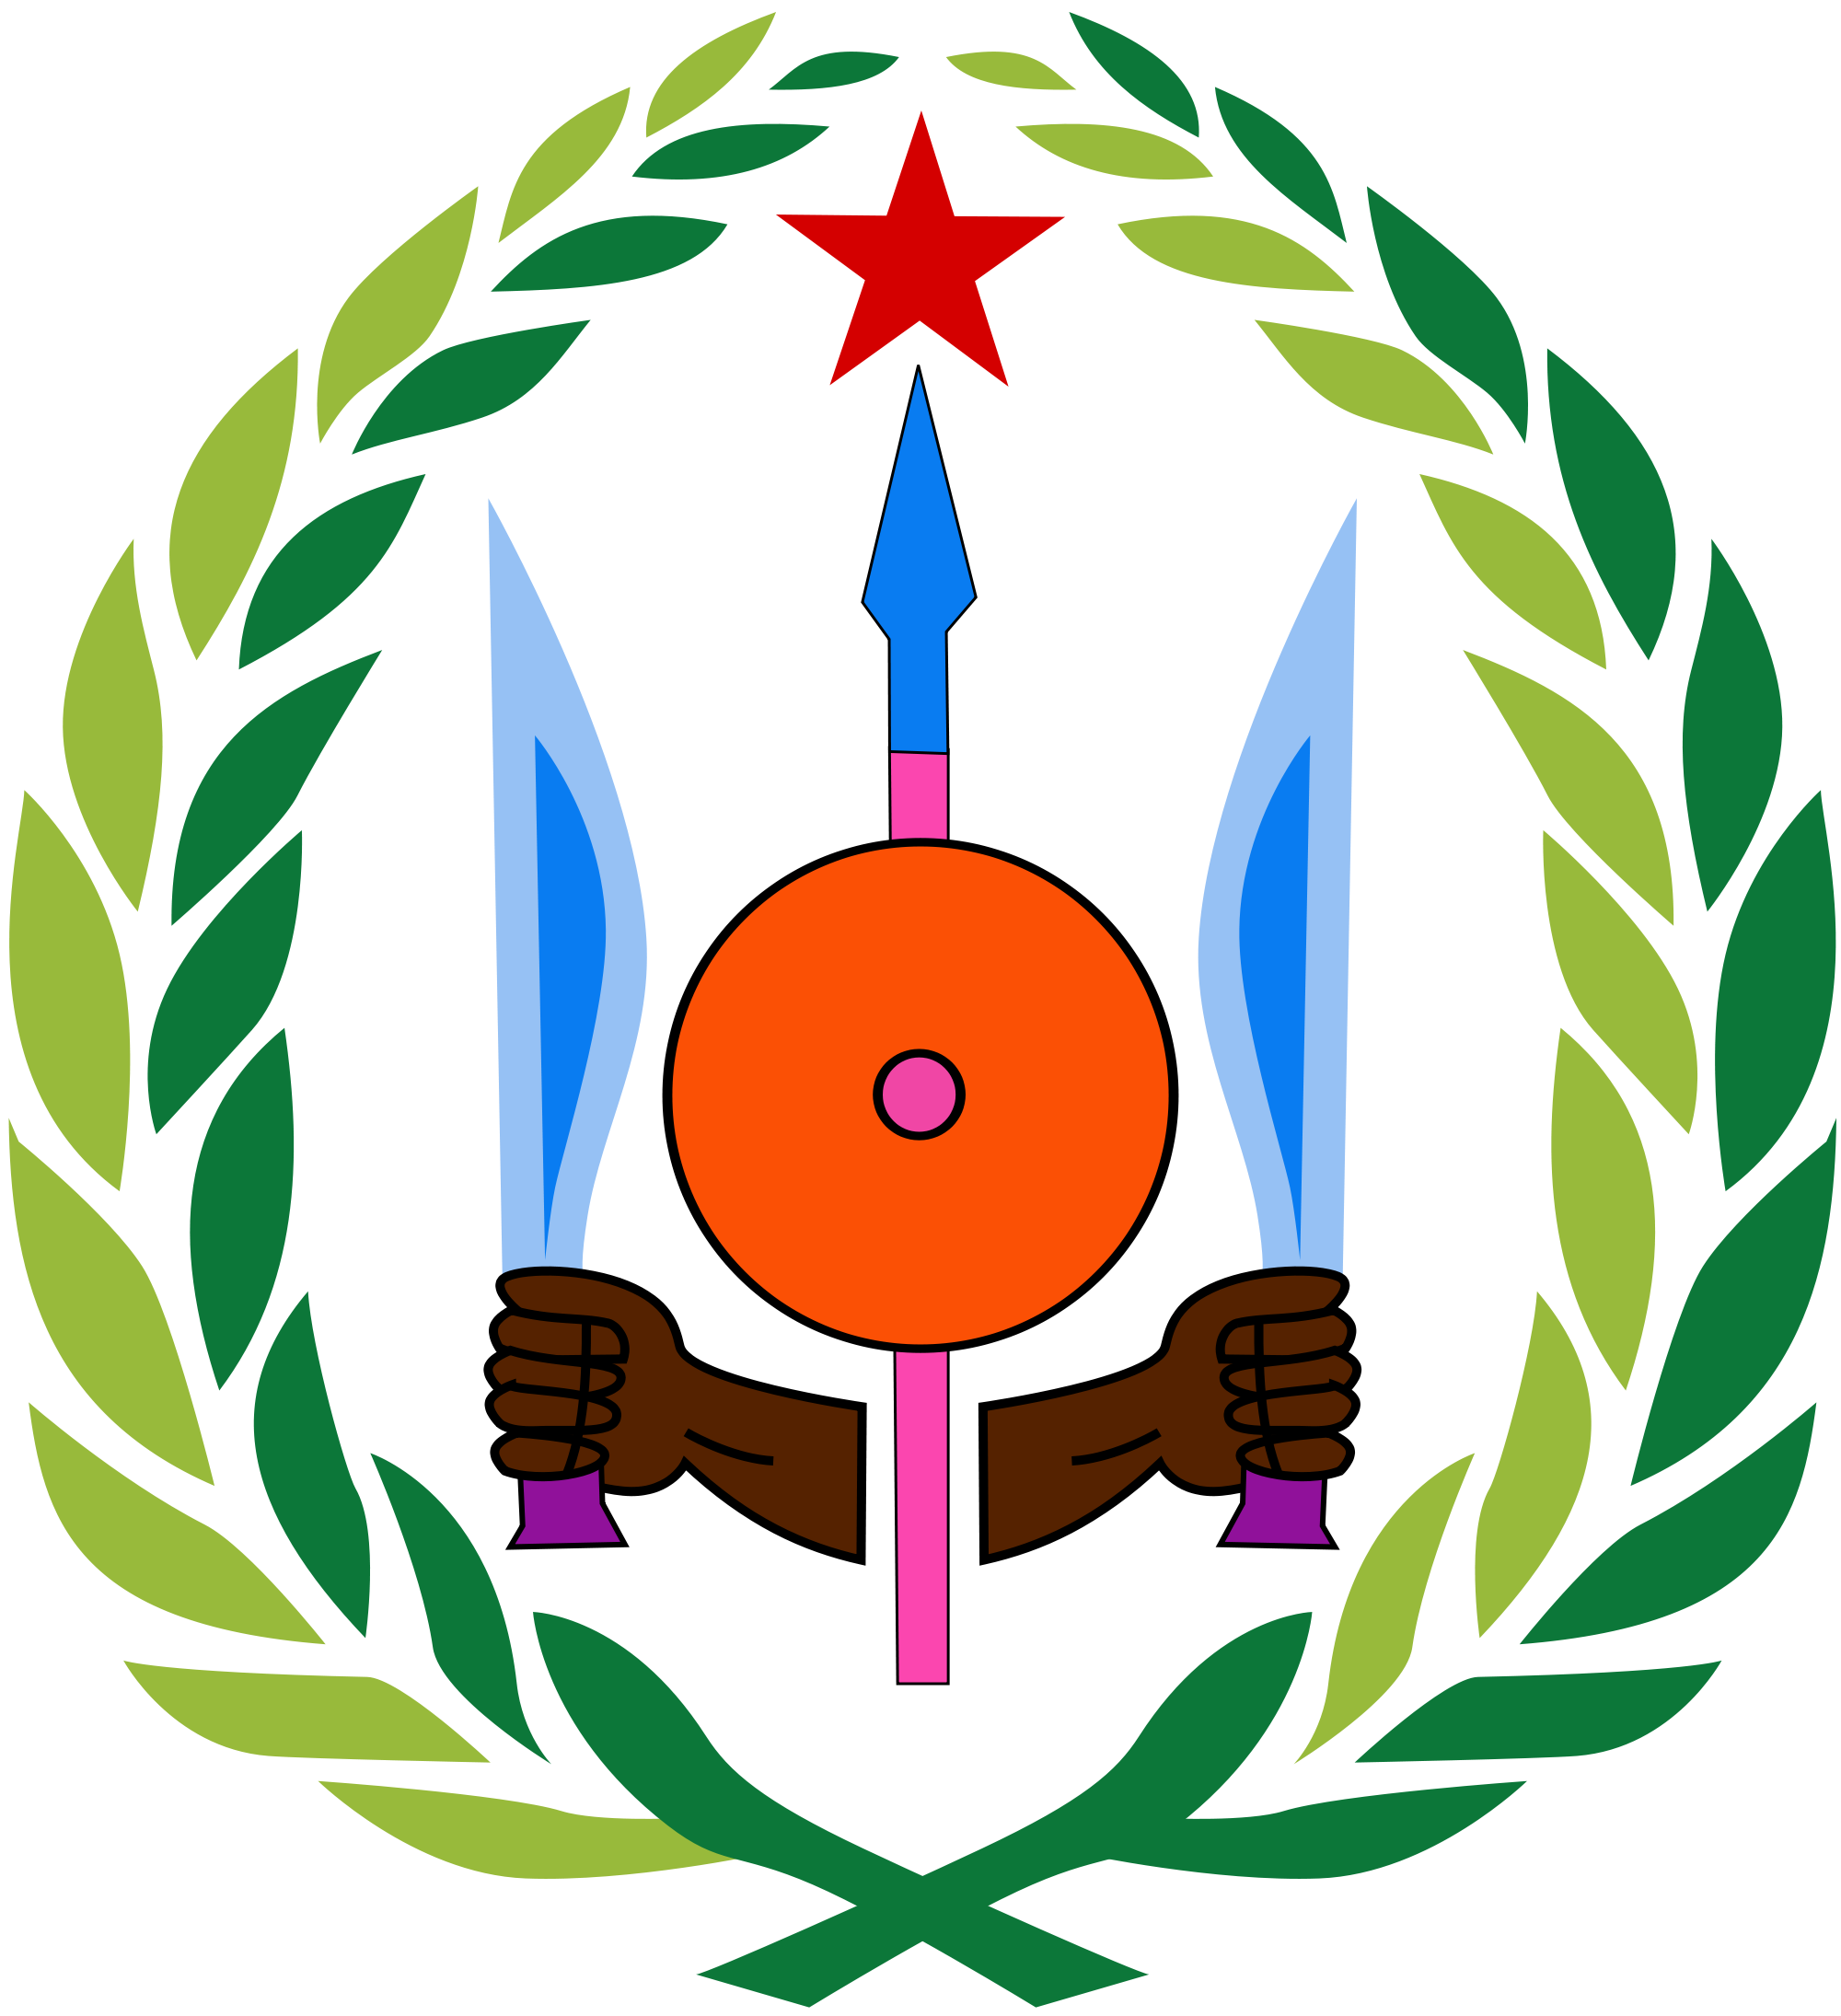 Wappen von Dschibuti